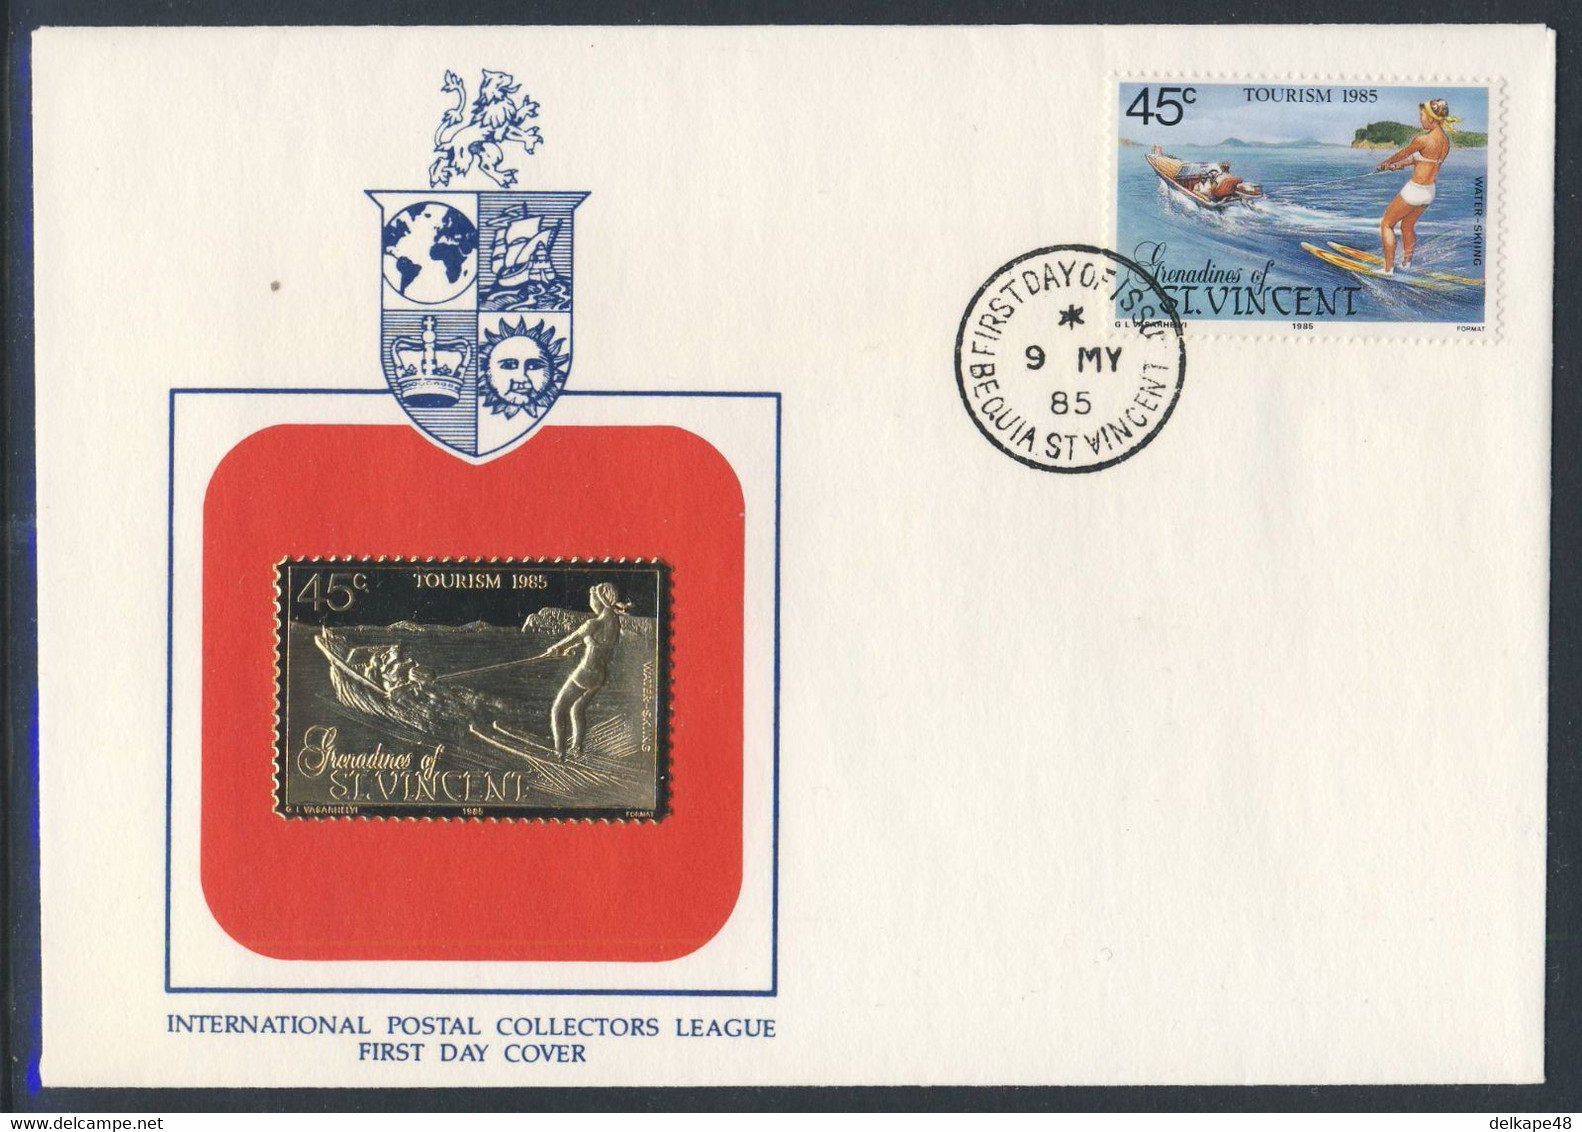 Grenadines Of St. Vincent 1985 FDC Mi 398 SG 387 - Golden Stamp - Water-skiing / Wasserskifahren / - Waterski